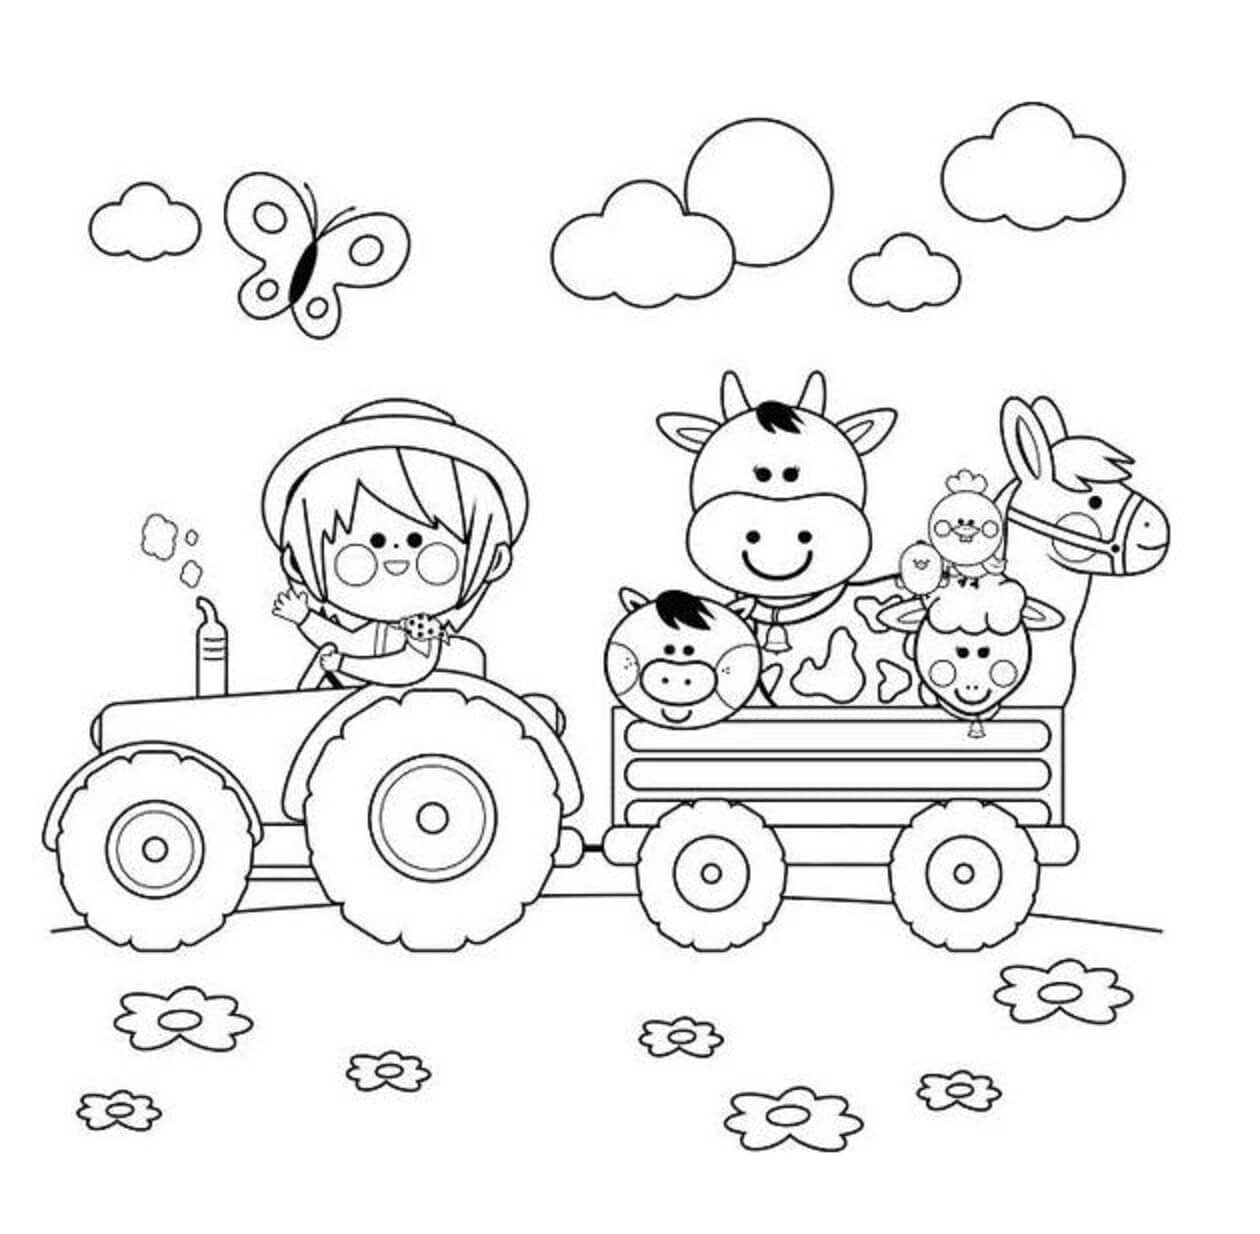 Kind dat de tractor bestuurt en de dieren vervoert